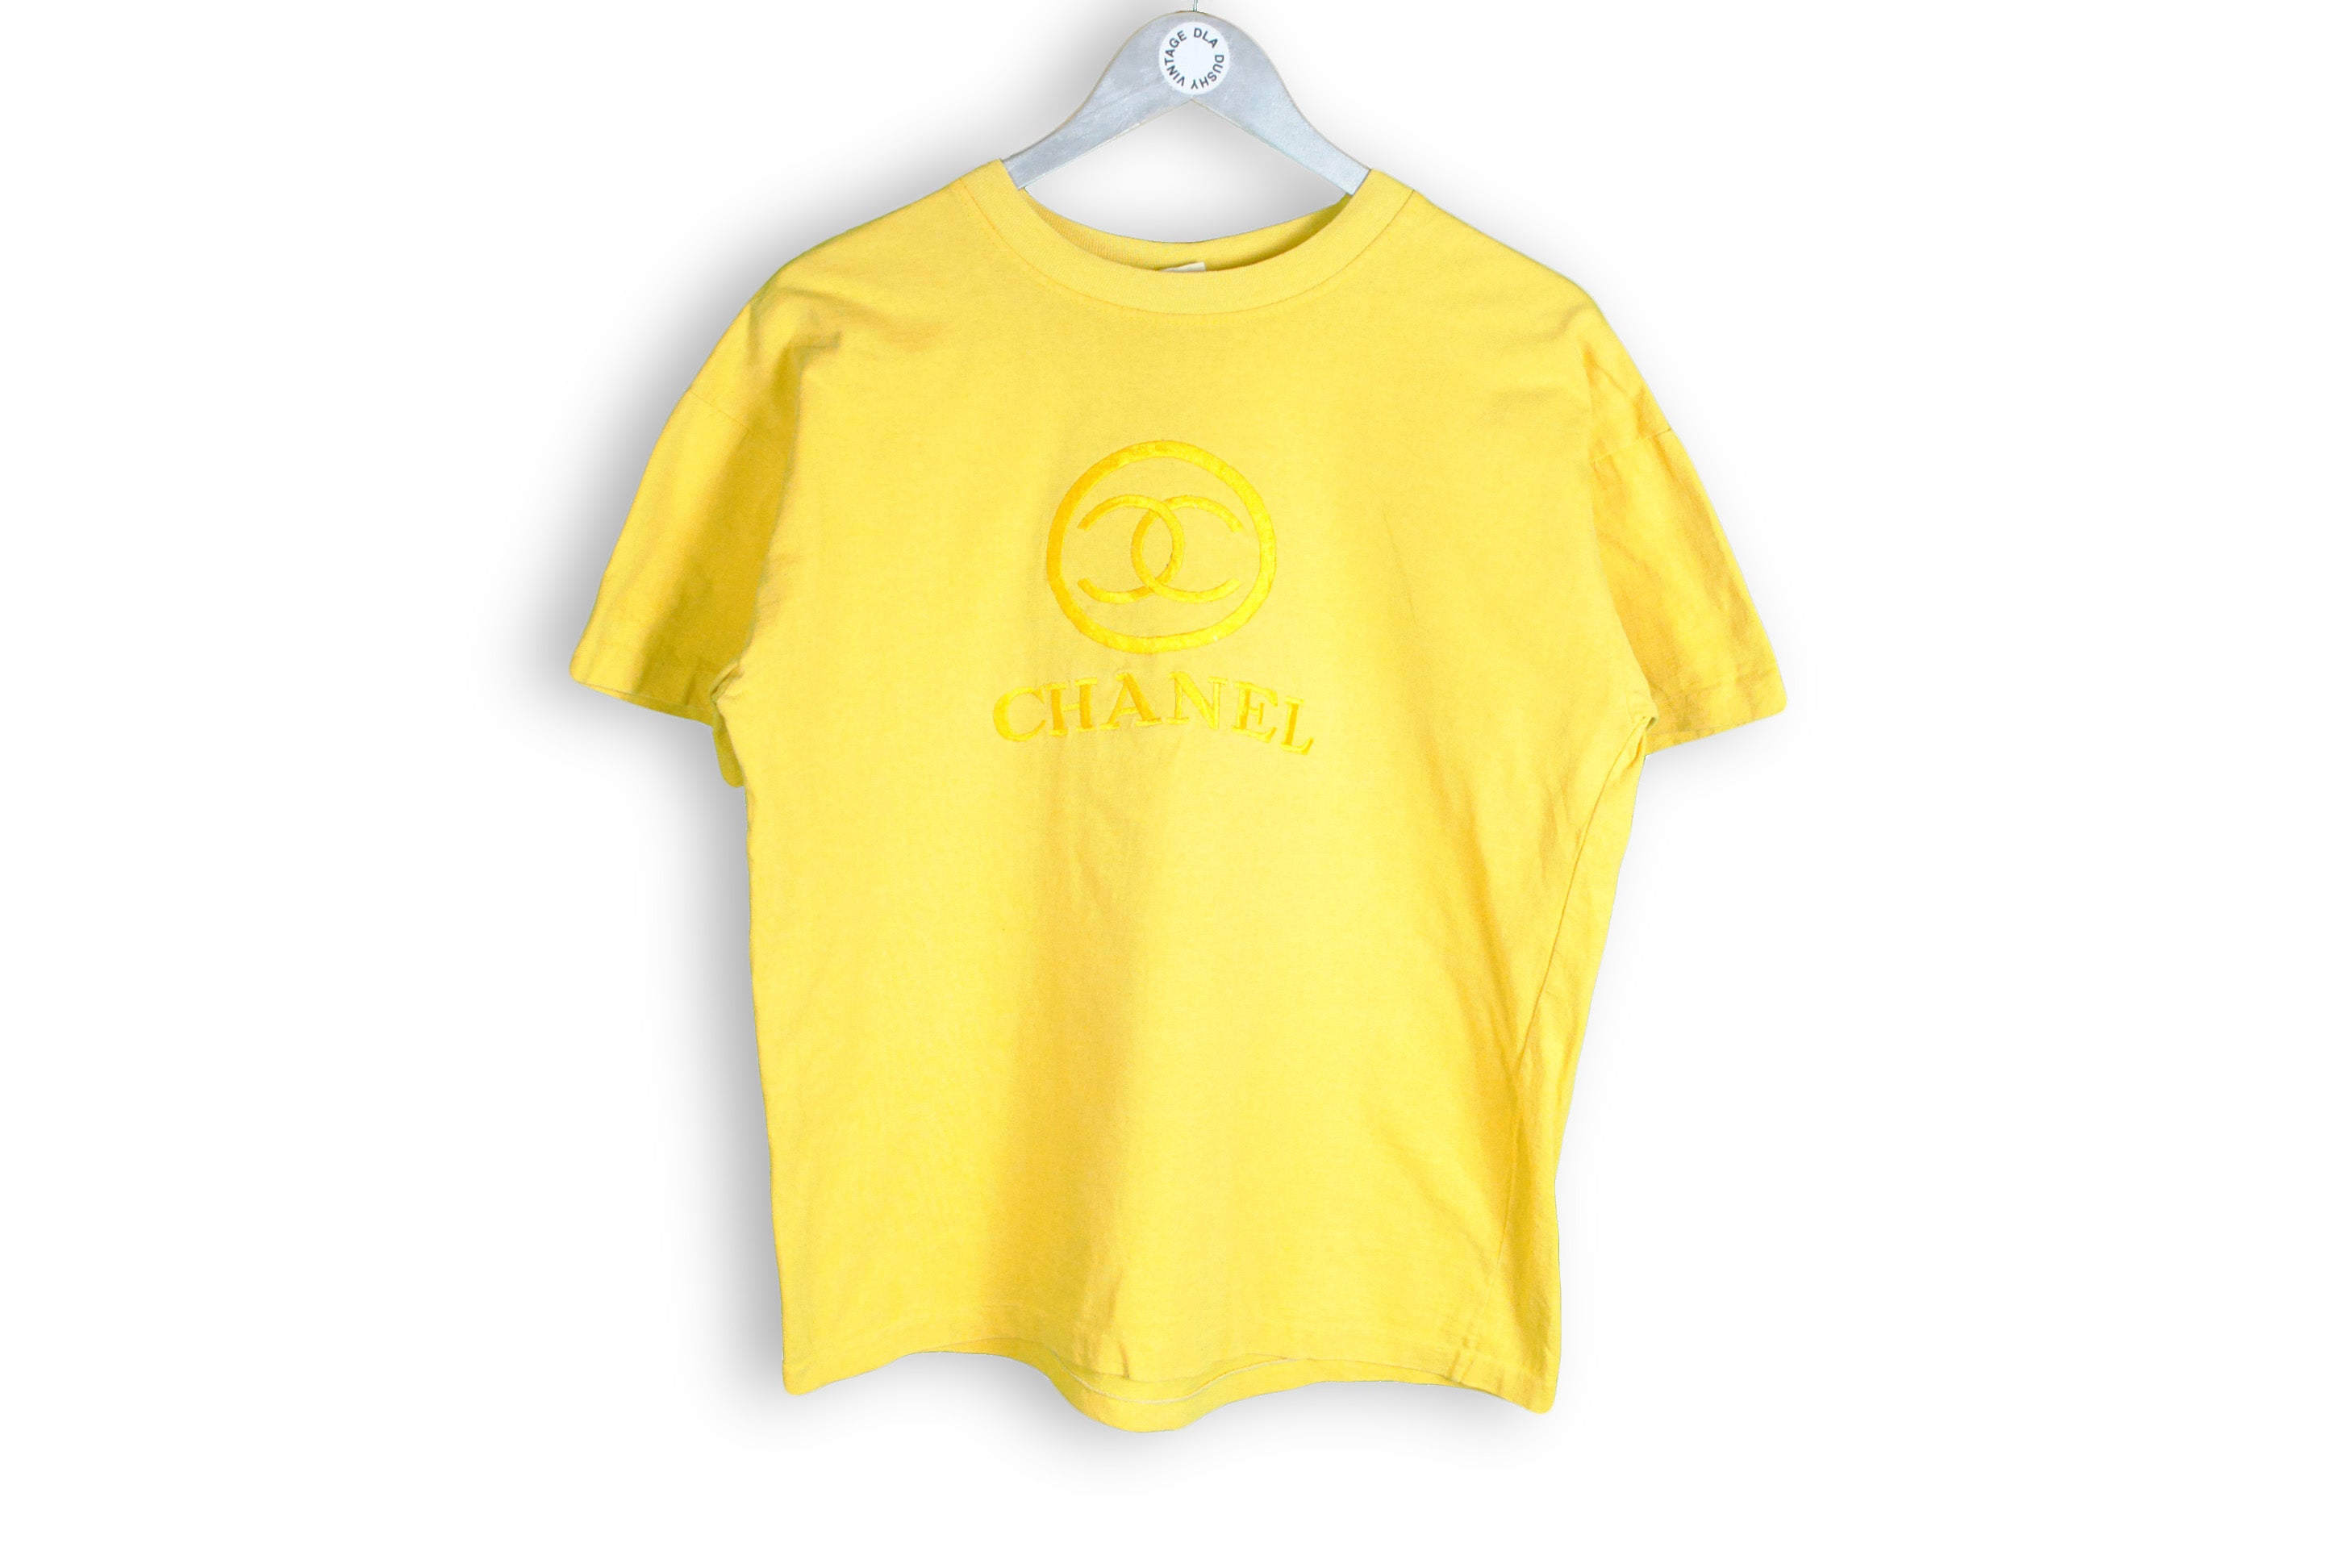 chanel logo tee shirt for women